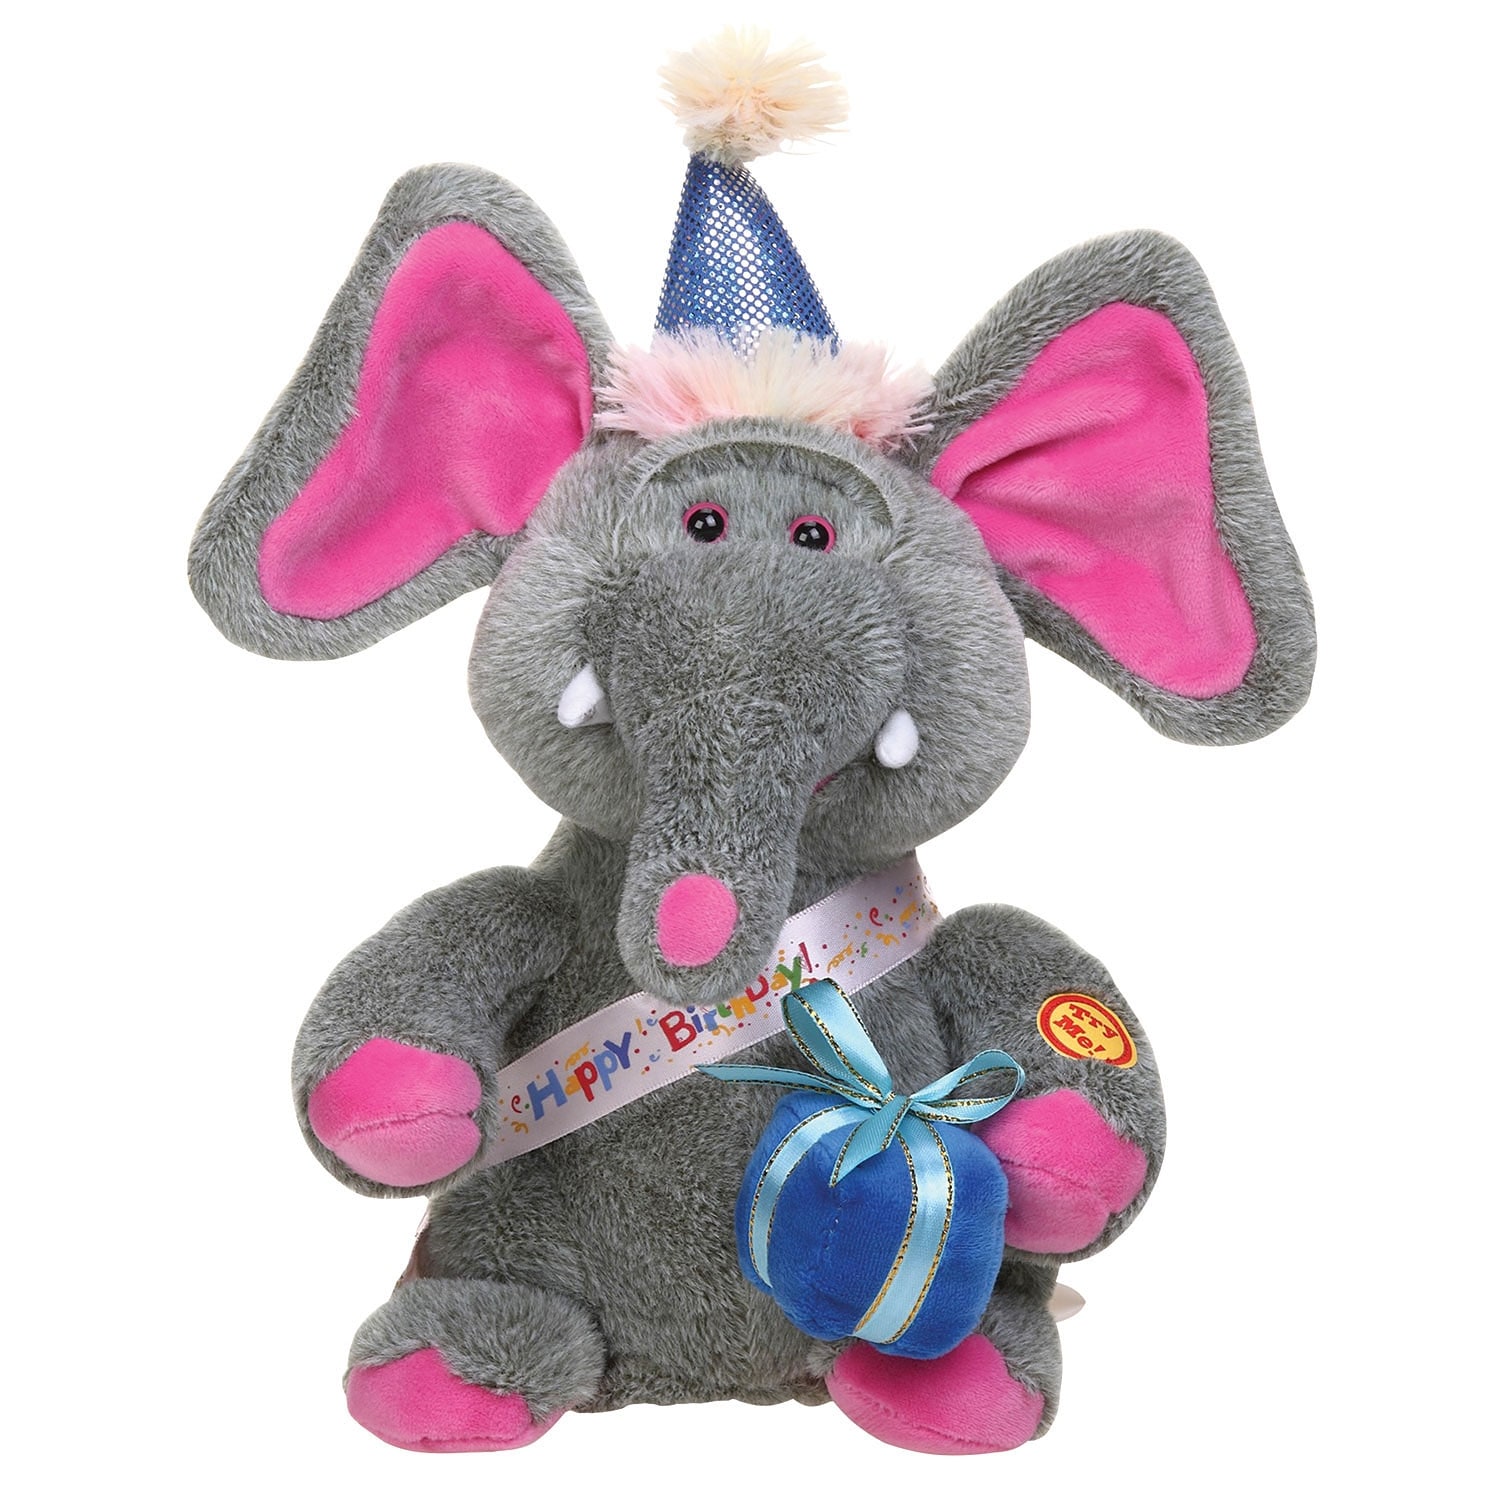 baby singing elephant